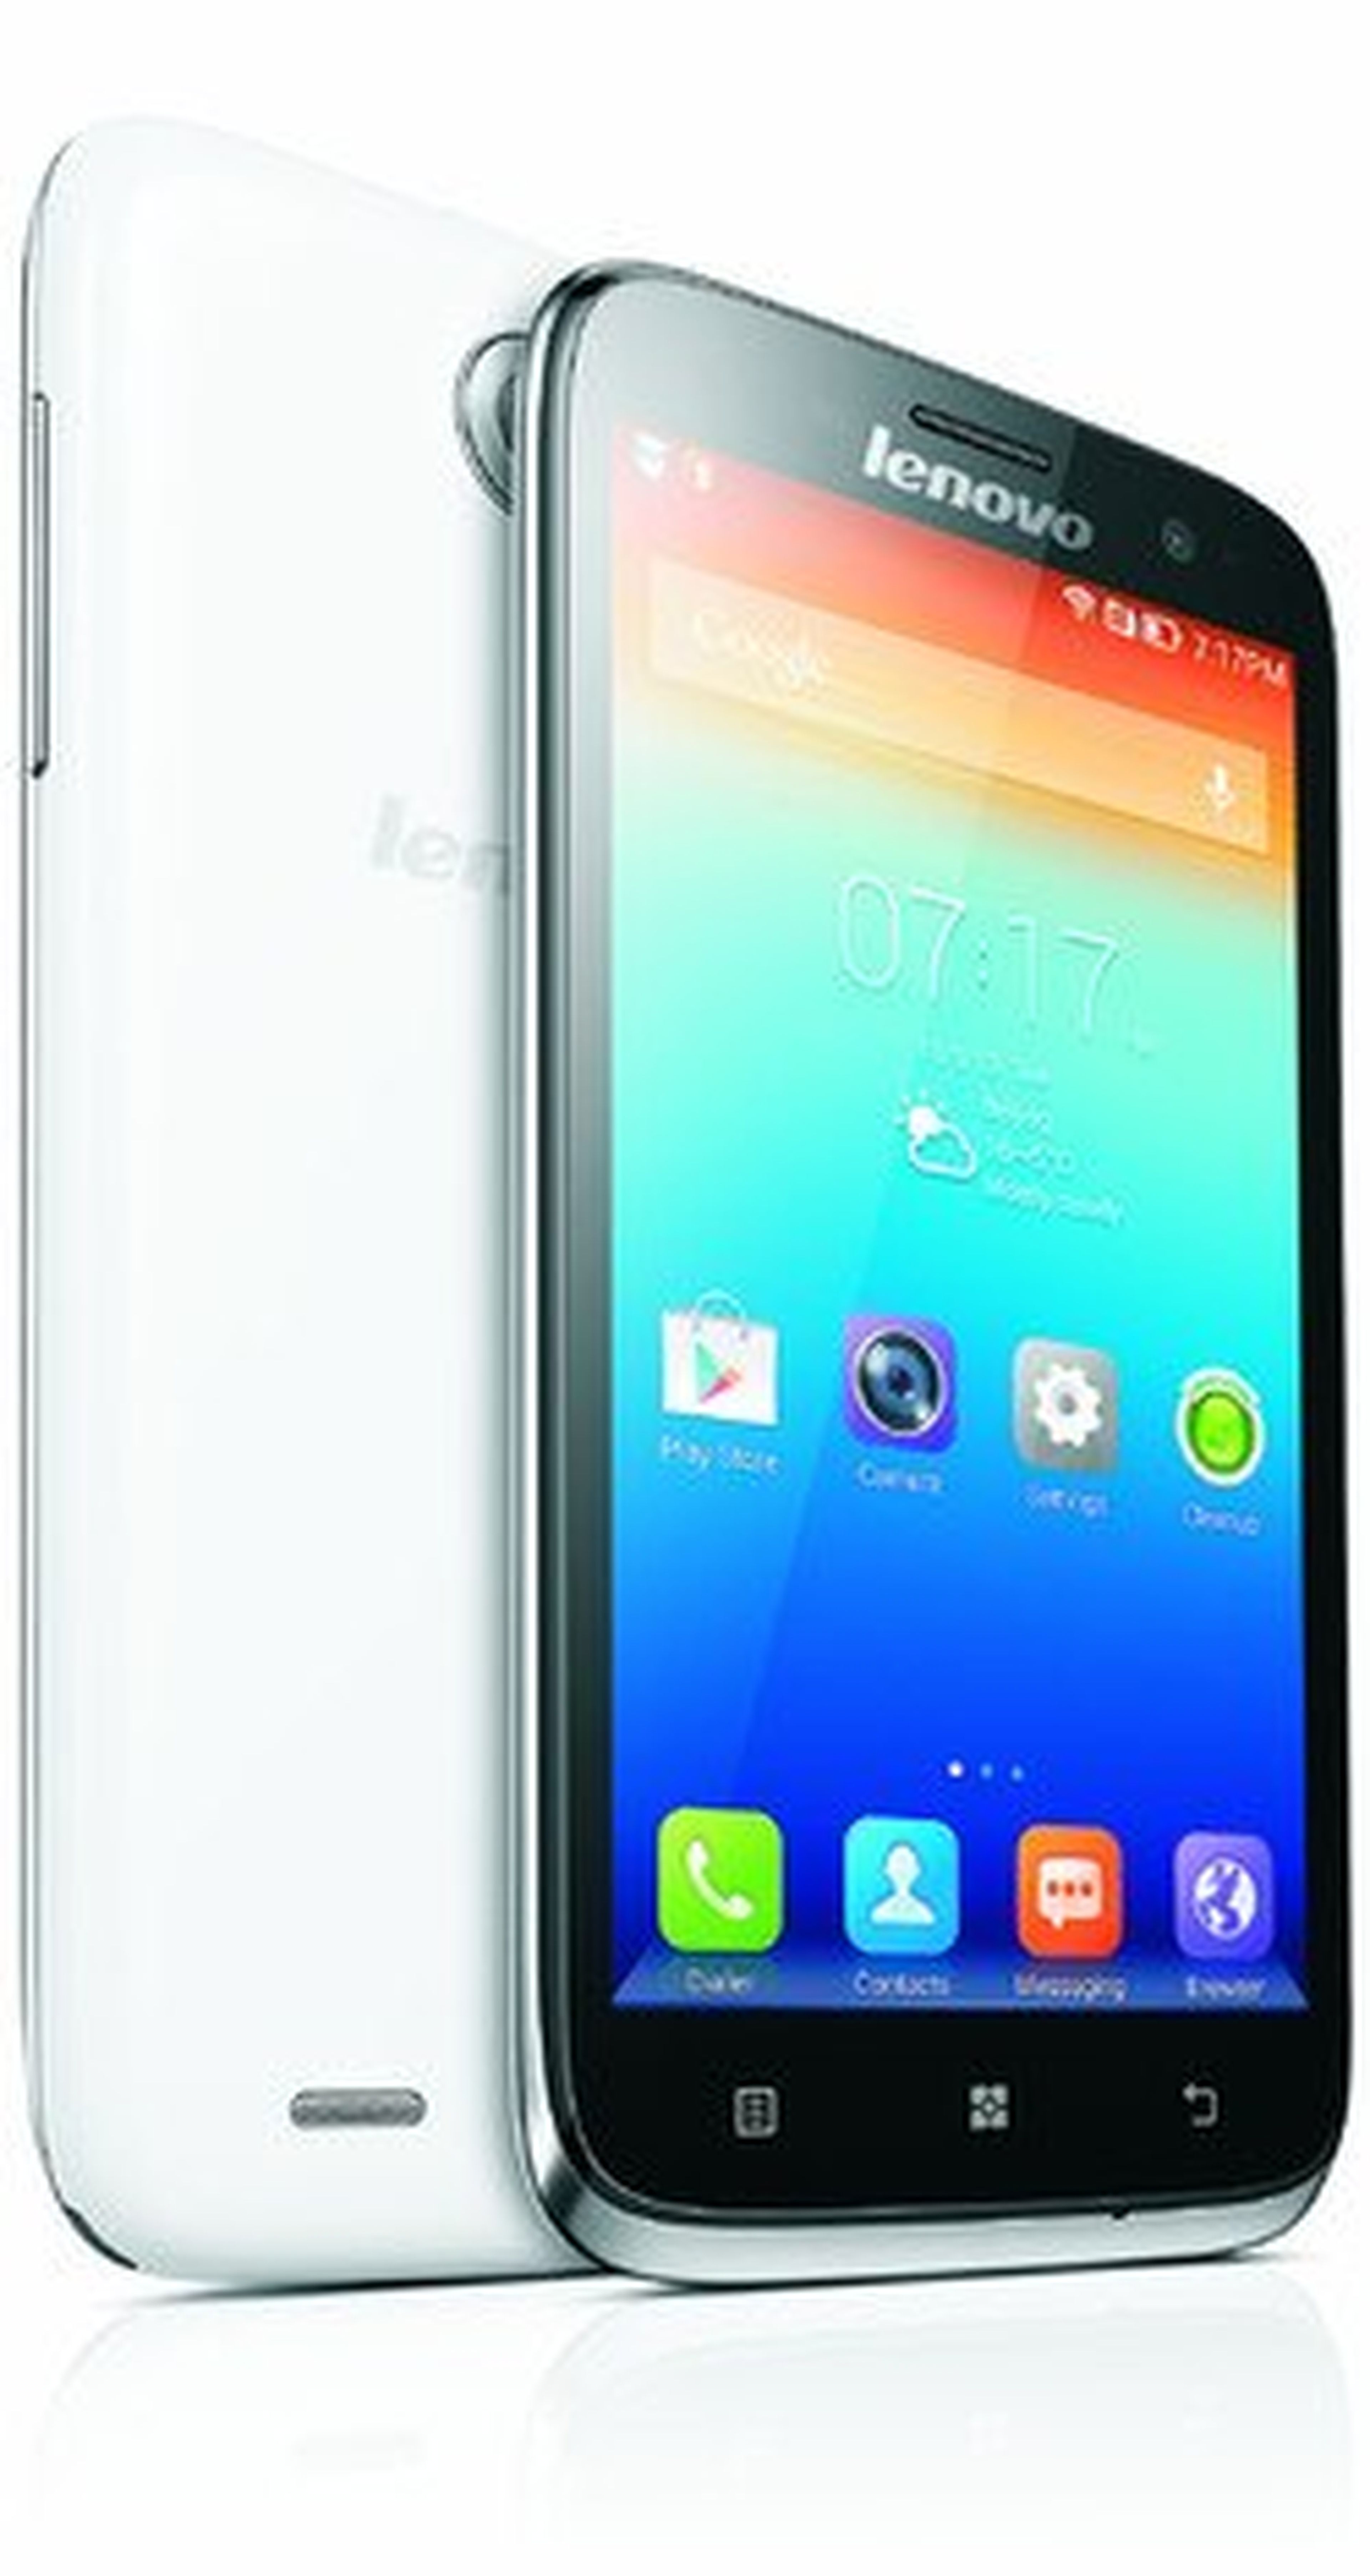 Lenovo presenta nuevos smartphones:Vibe Z, S930, S650 y A859